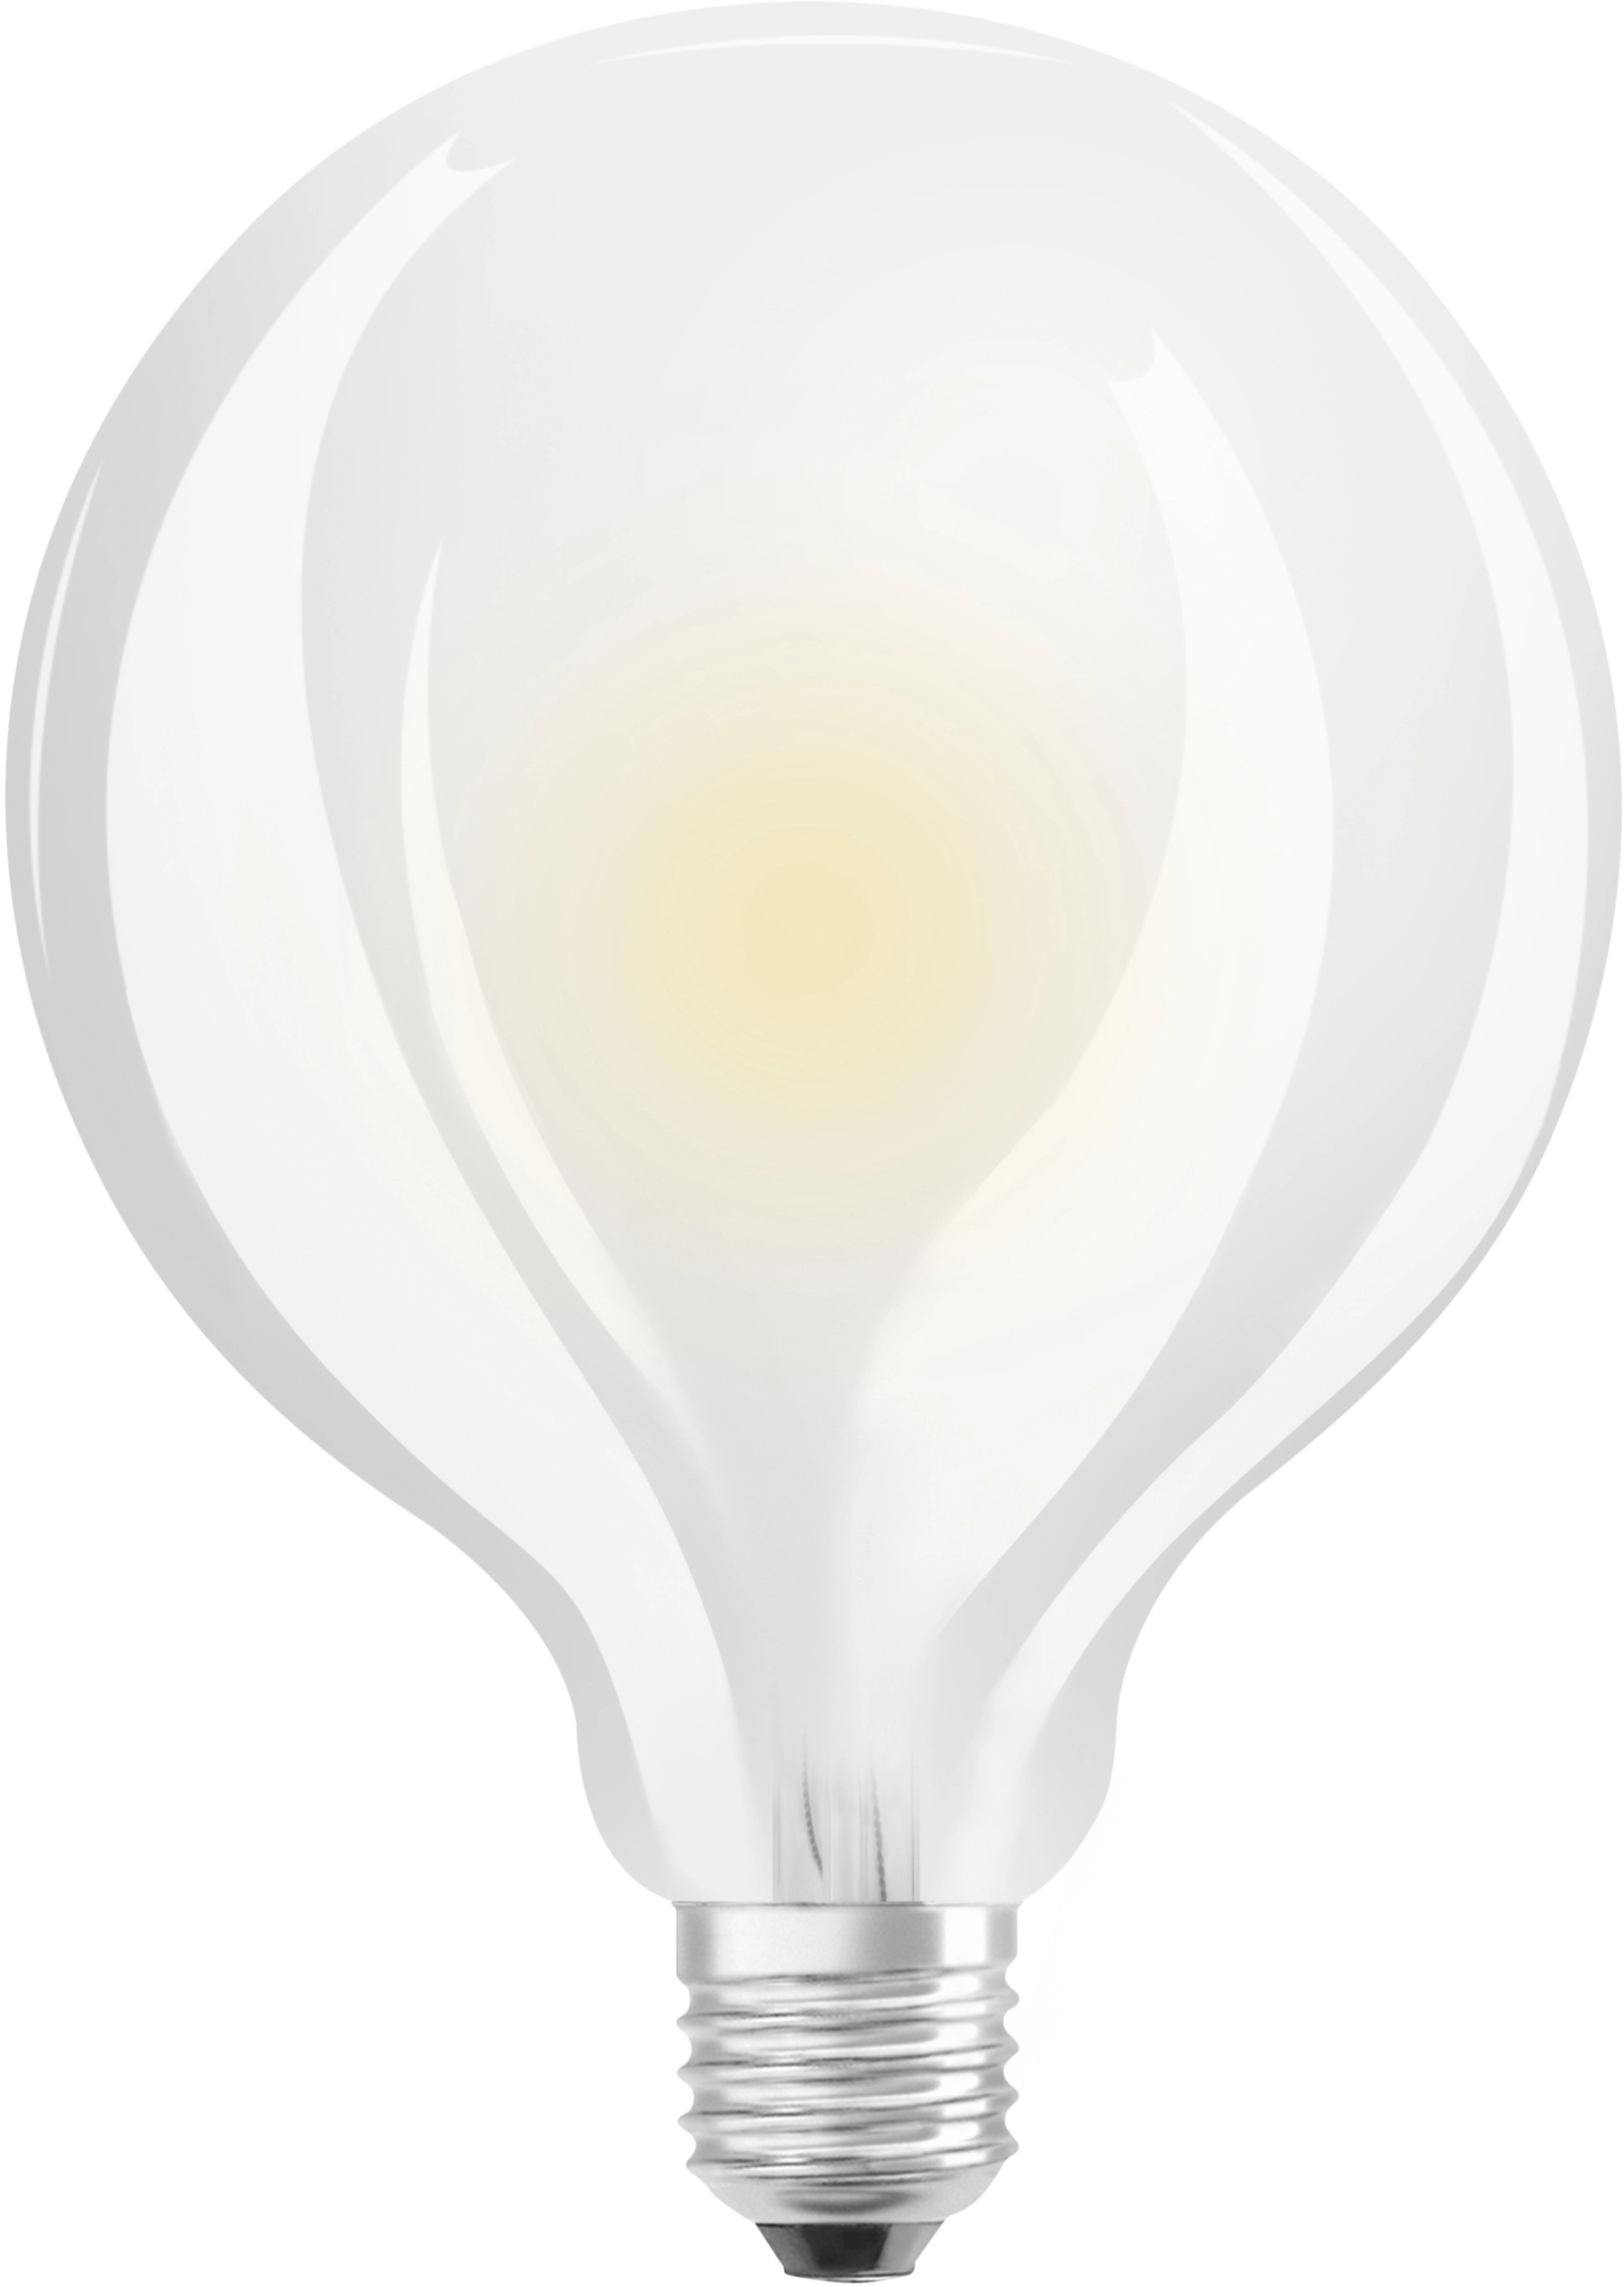 Lampadina LED tutto vetro Osram E27 luce calda 60 W 2700 K 806 lm